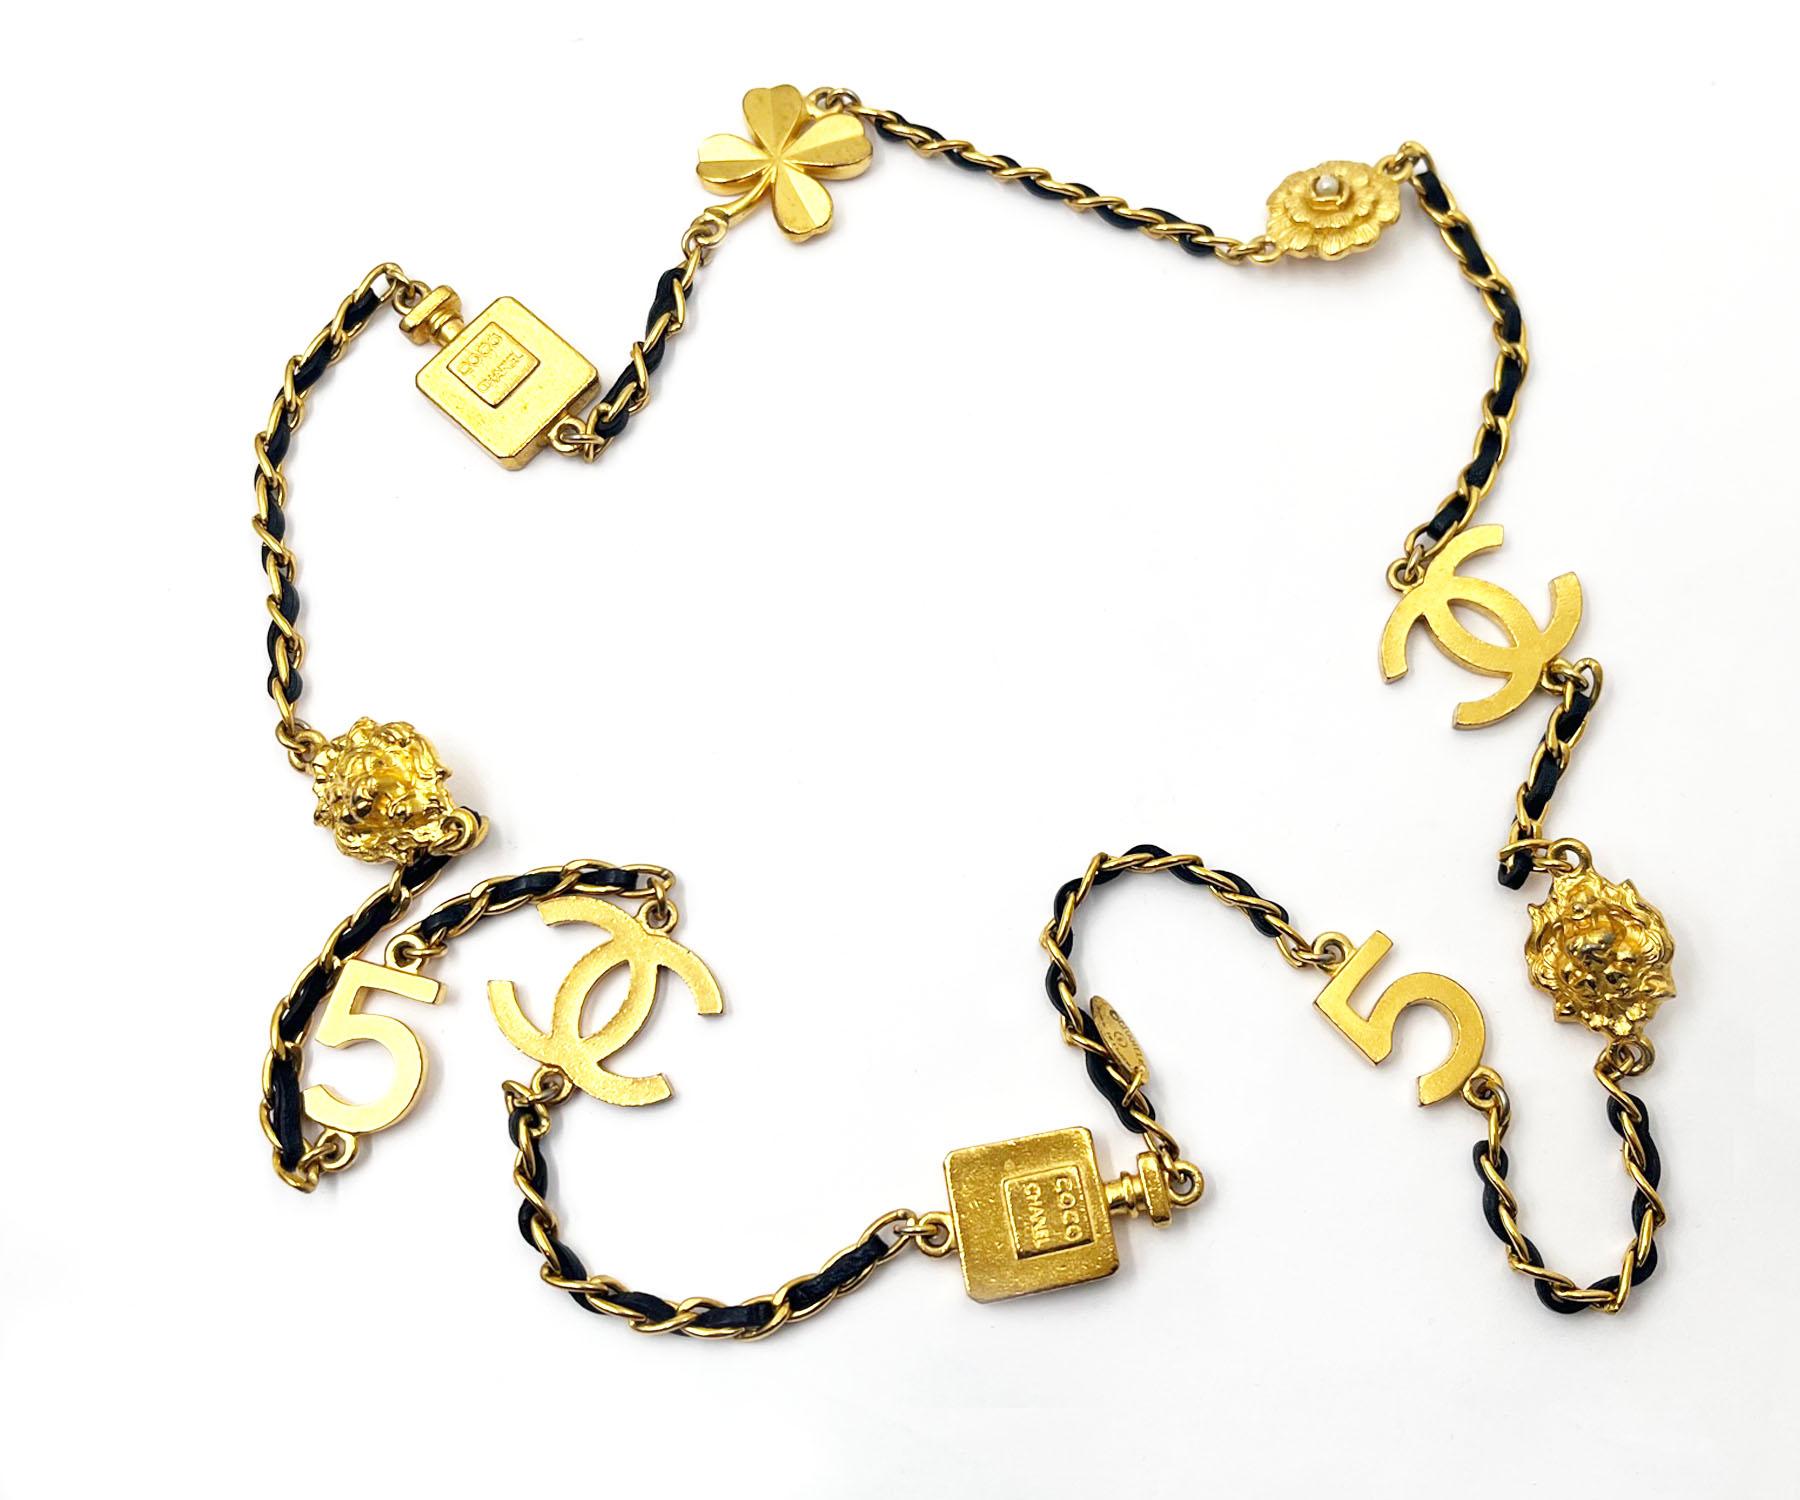 Chanel Seltene Vintage vergoldete CC-Motiv Parfüm-Halskette mit Kamelie-Leder-Halskette, Vintage


*Marke Chanel
*Hergestellt in Frankreich
*Kommt mit dem Originalkarton 

-Er ist ungefähr 33